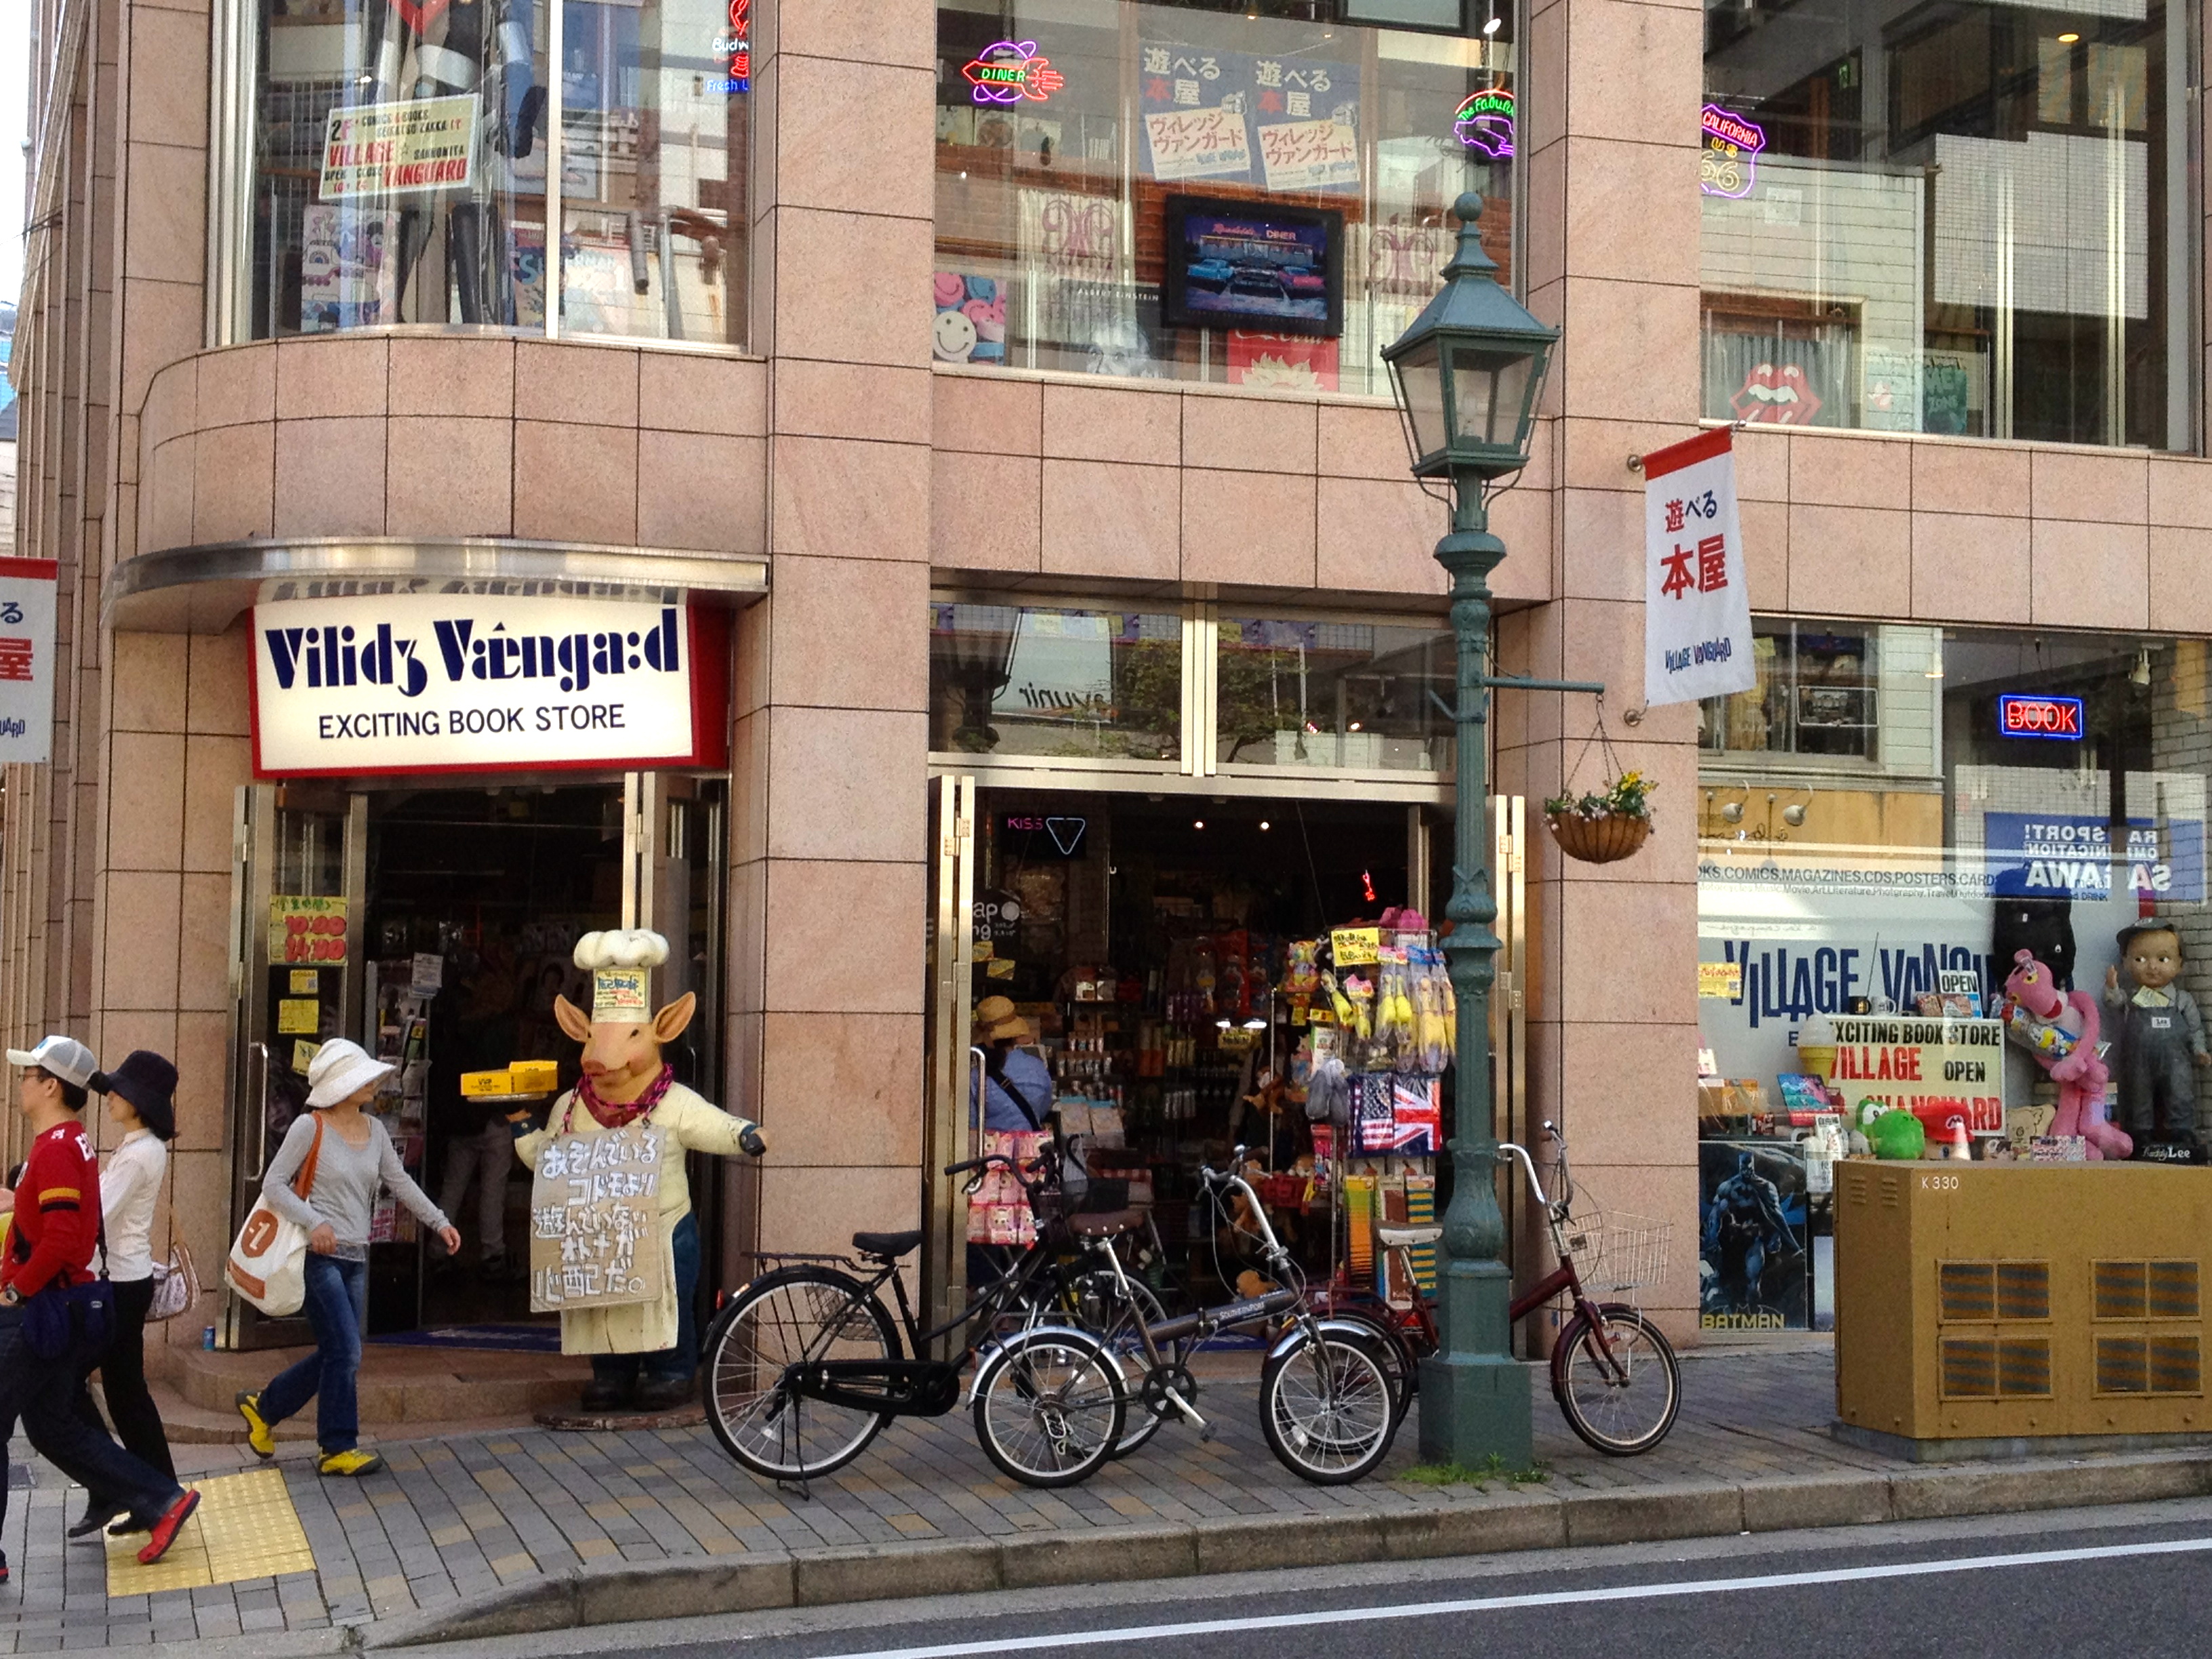 ヴィレッジバンガード in 神戸トア・ロード　ここも愛と情熱が一杯